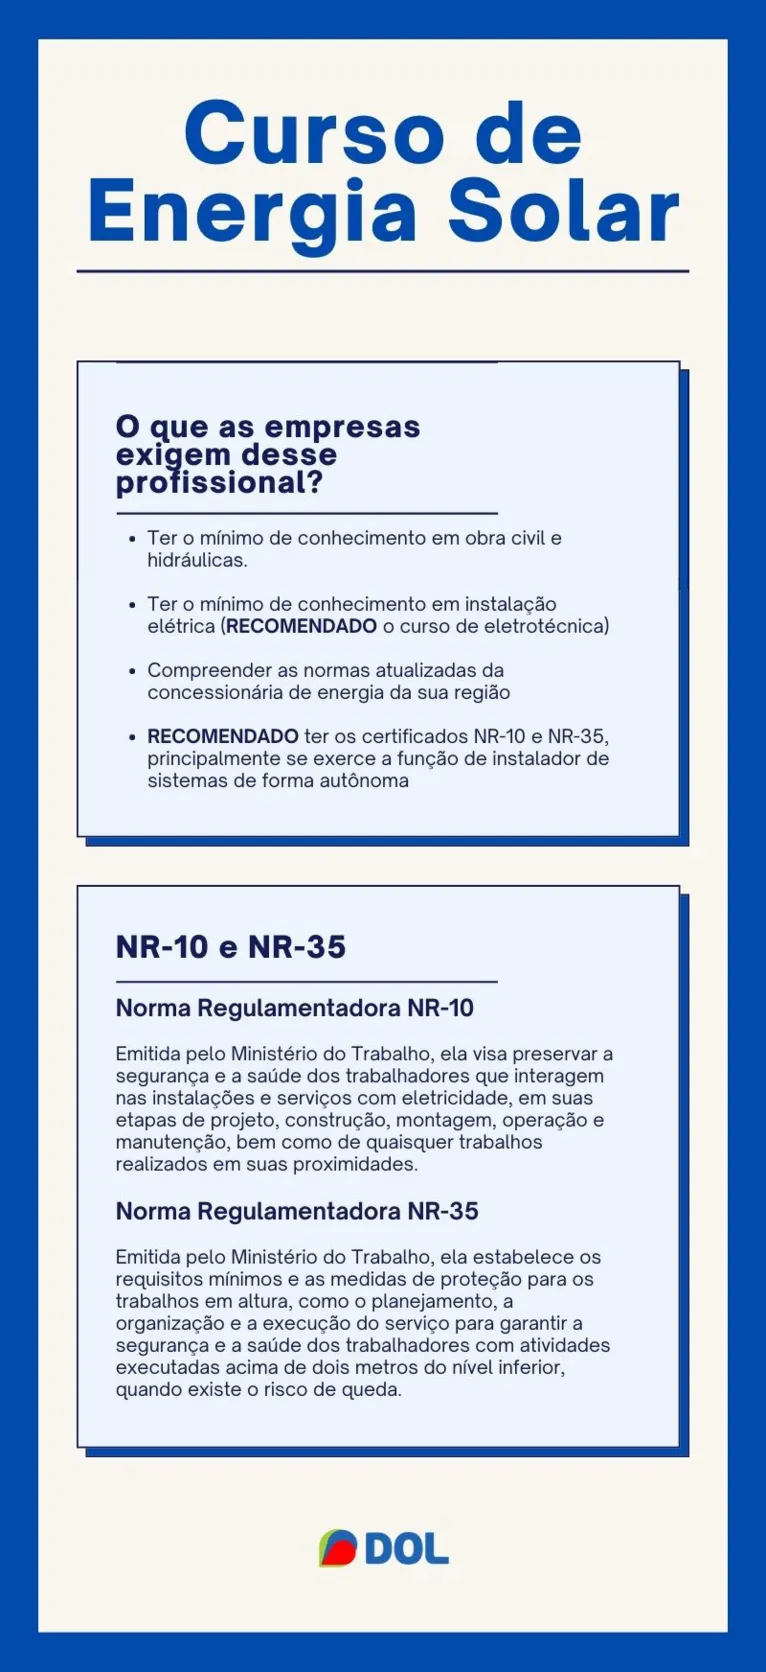 O que as empresas exigem do profissional que atua na área? E o que significa NR-10 e NR-35?